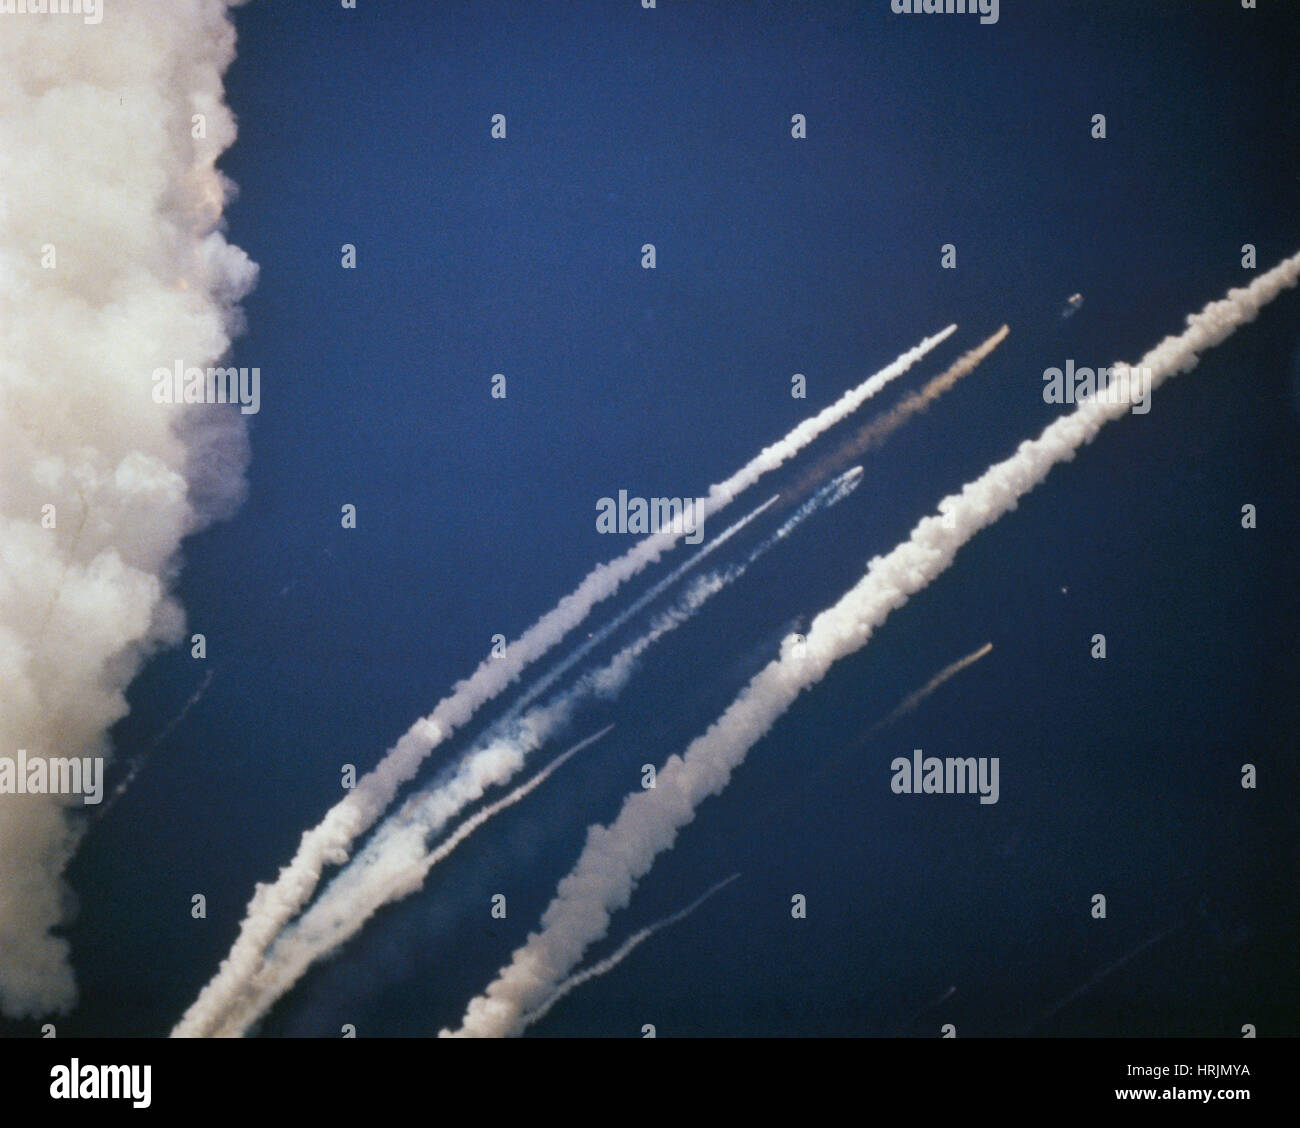 La catastrophe de la navette spatiale Challenger, 1986 Banque D'Images